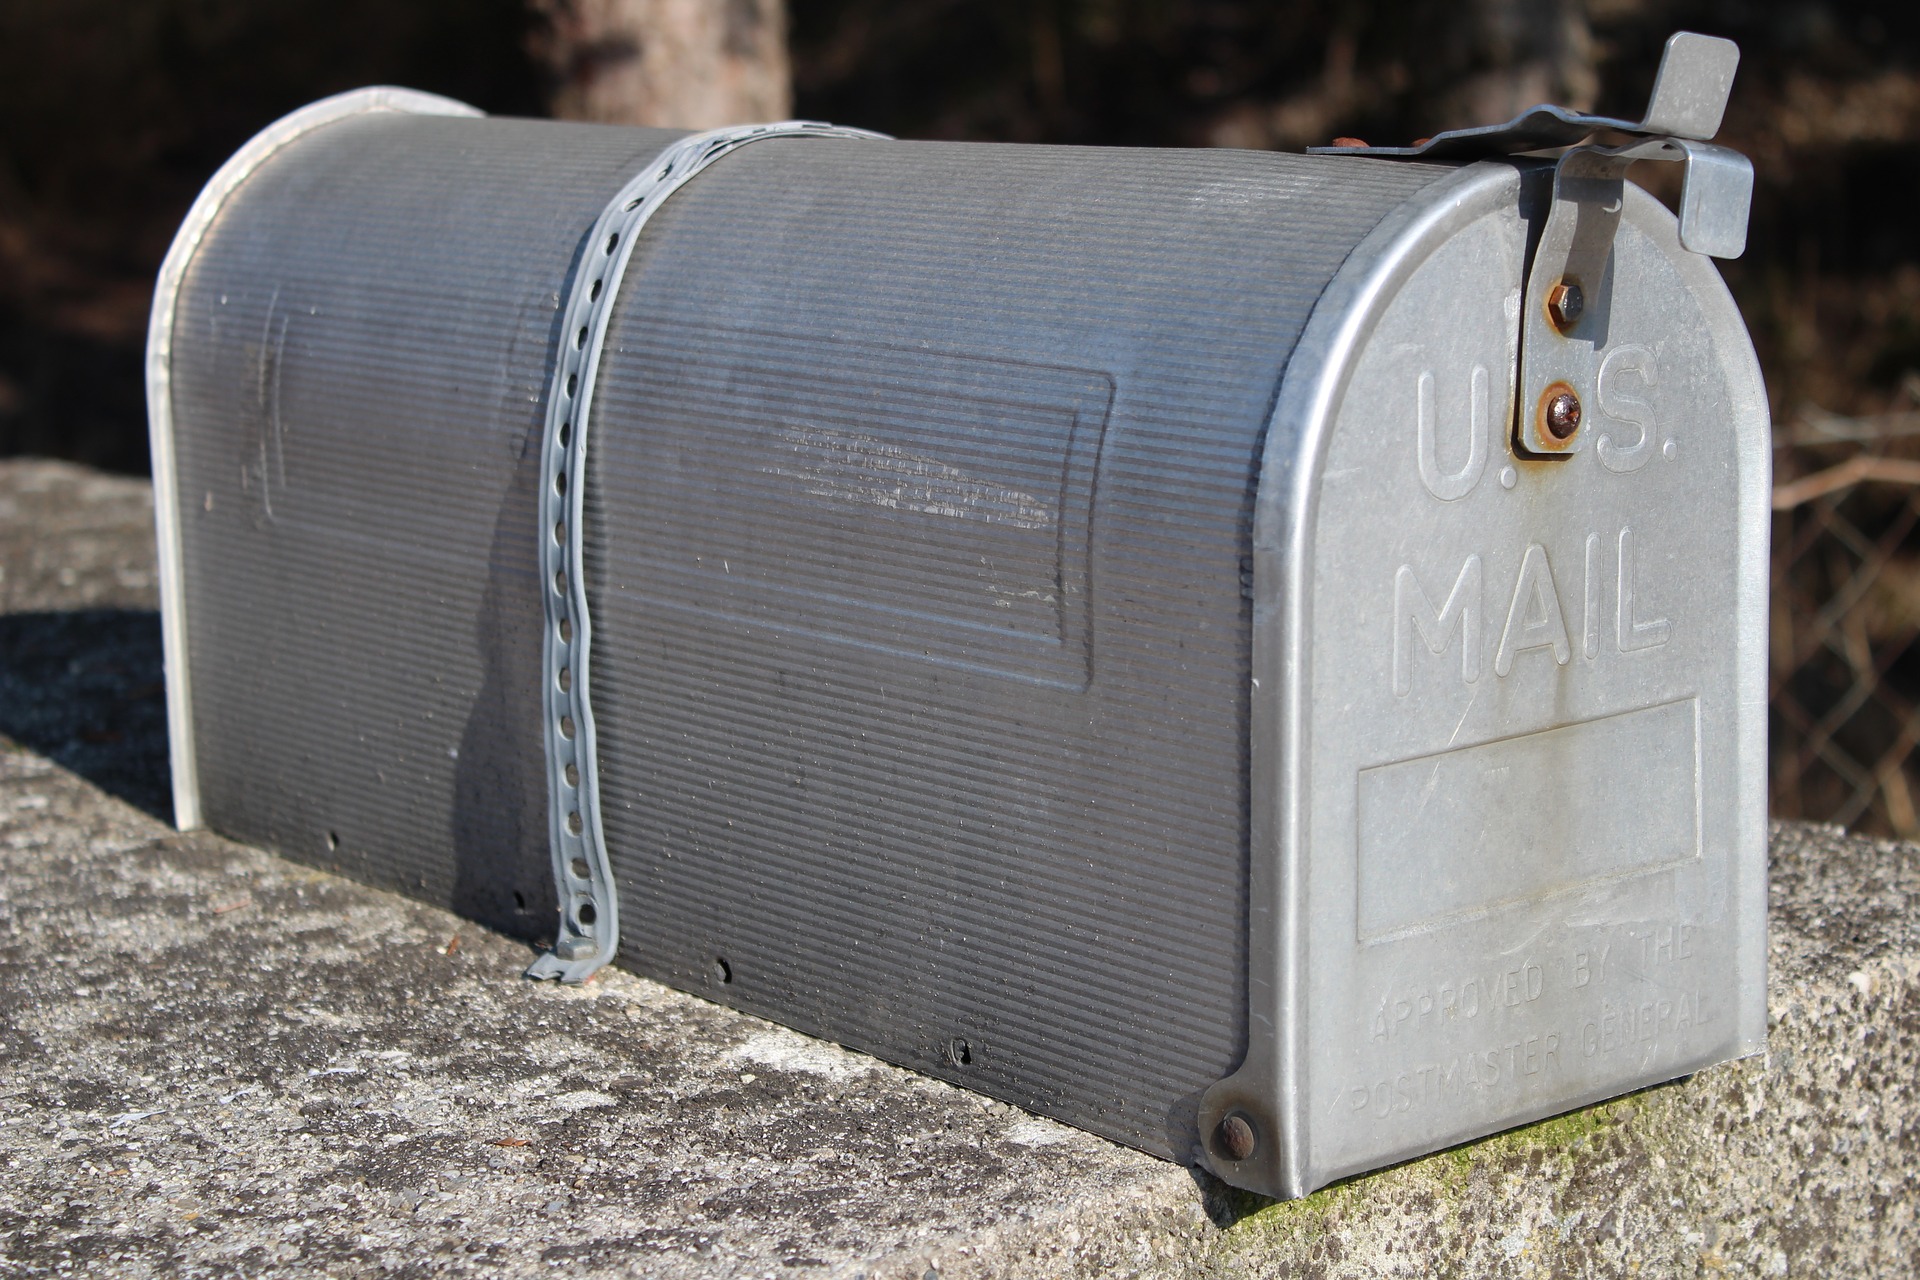 mailbox-3502918_1920 (c) Bild von Florin Birjoveanu auf Pixabay